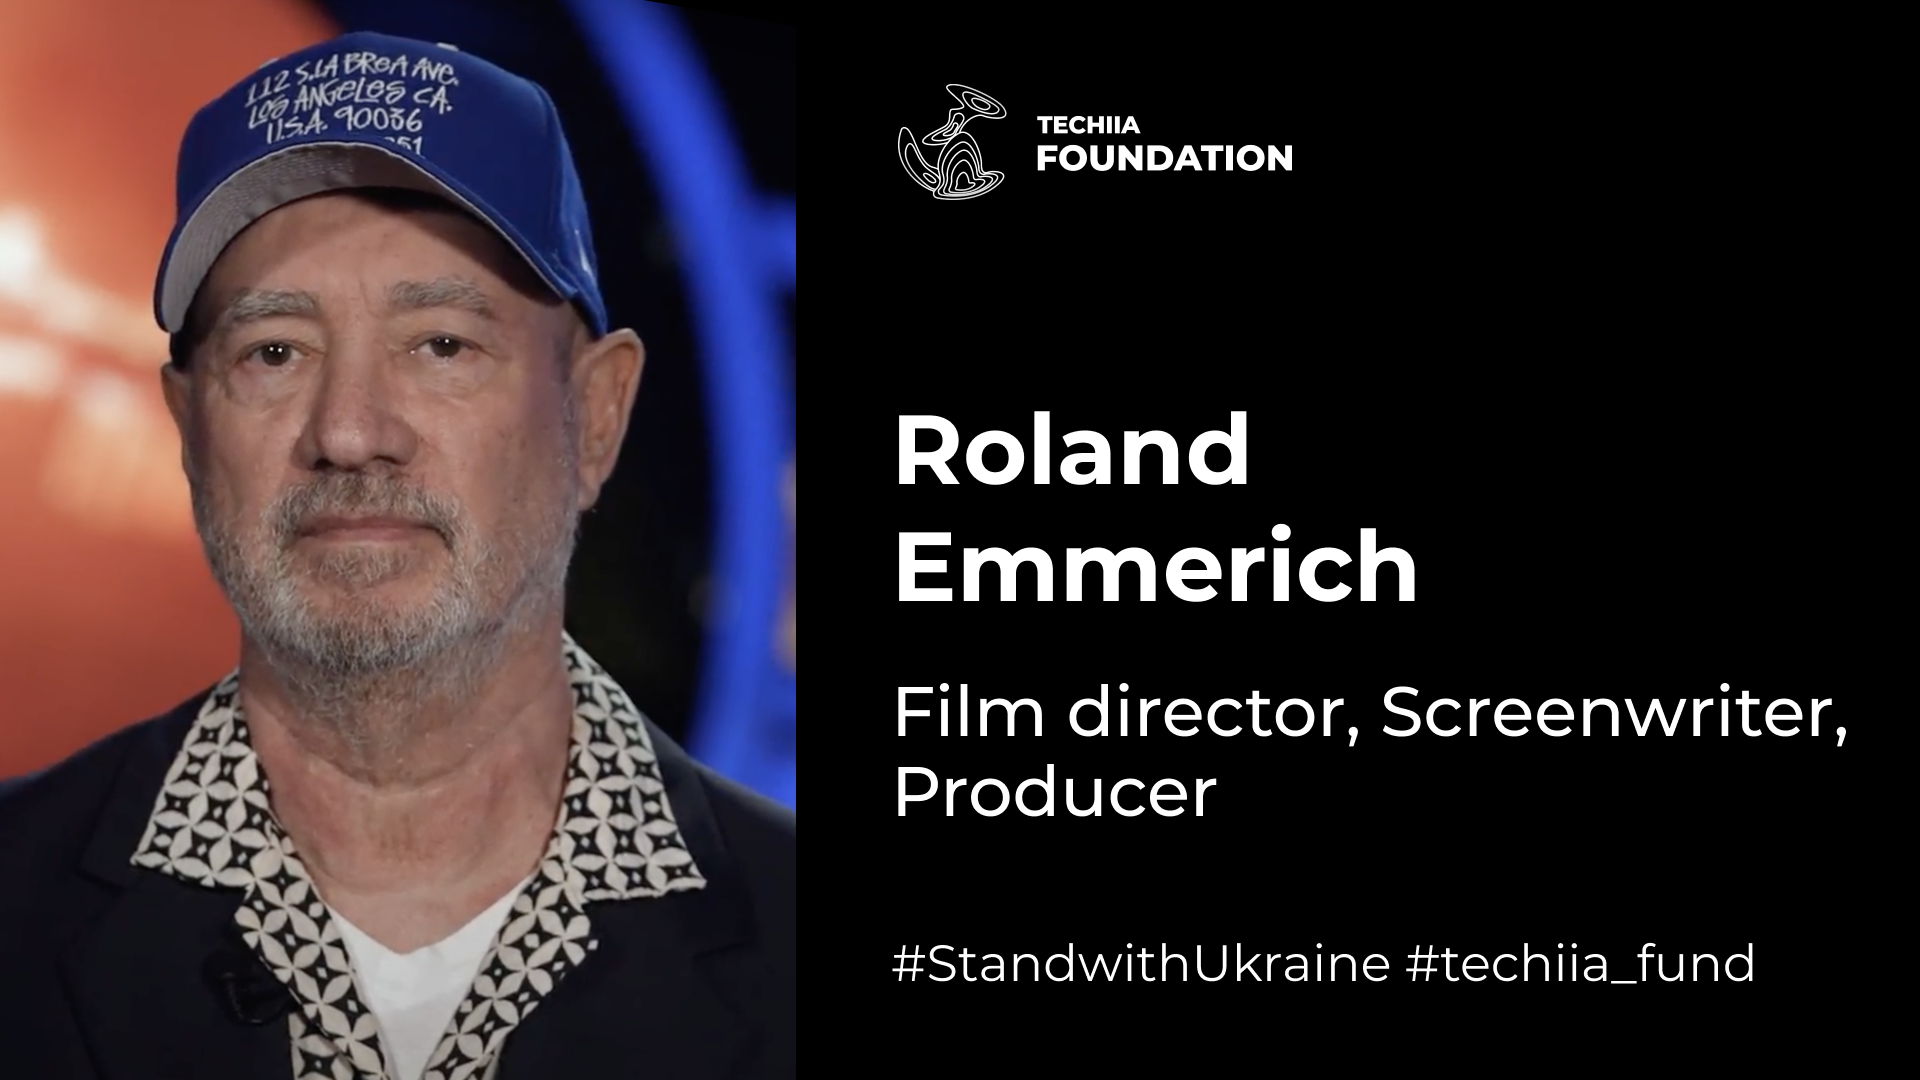 "Los ucranianos ganarán, estoy seguro" — Roland Emmerich, director de Hollywood, hizo una declaración en apoyo a Ucrania